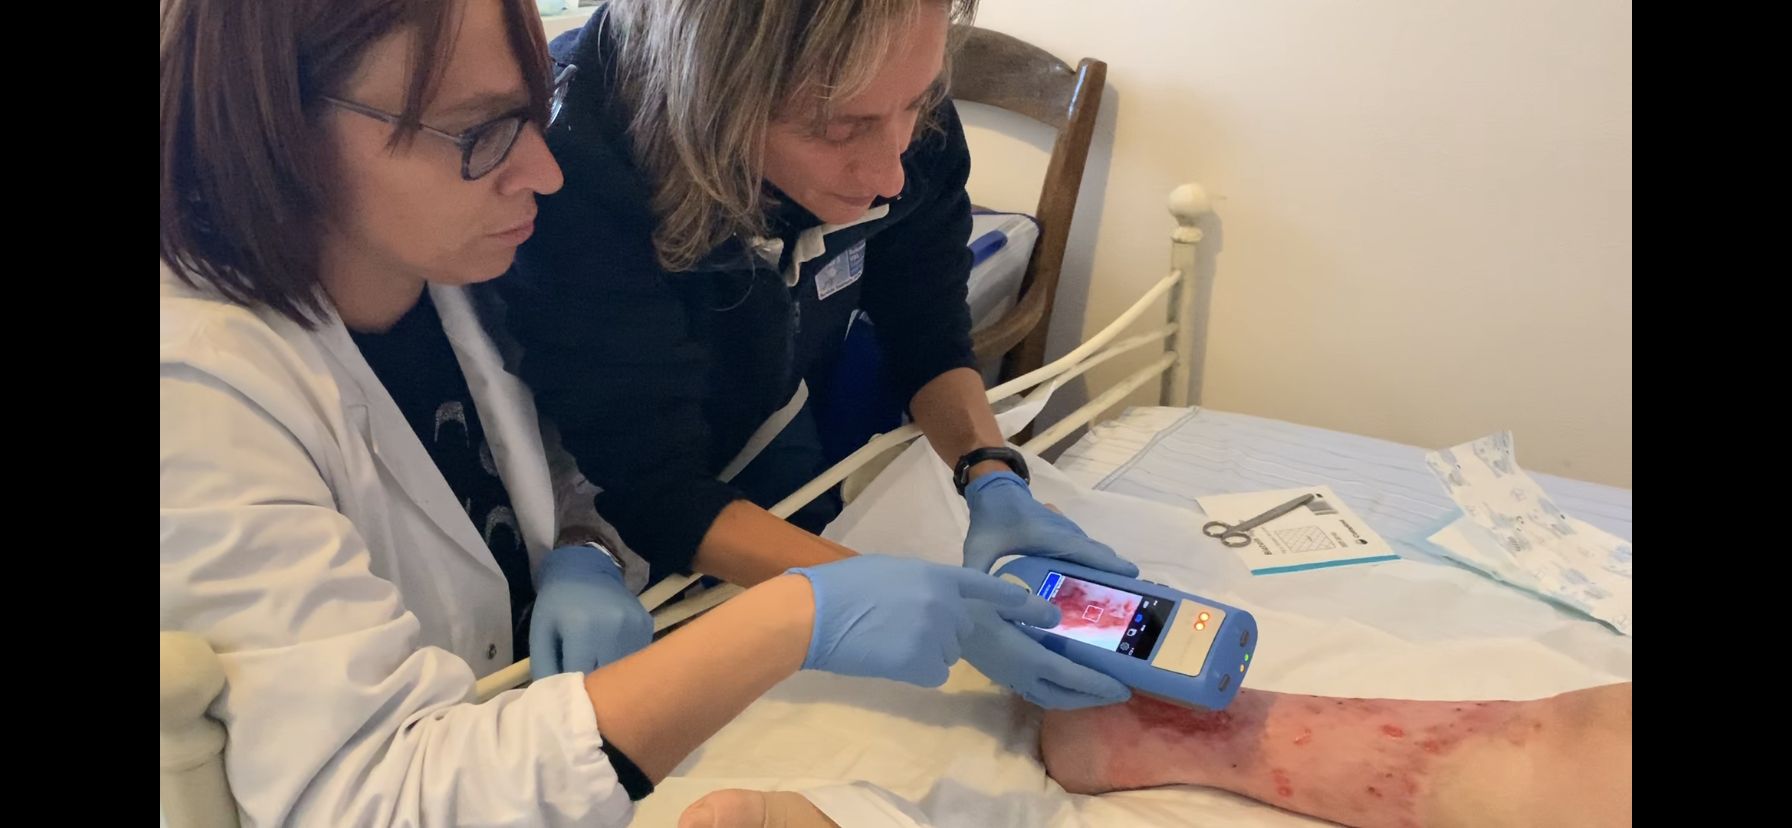 Lesioni cutanee: i tablet nuovi strumenti per gli infermieri della Rete Asl Tse